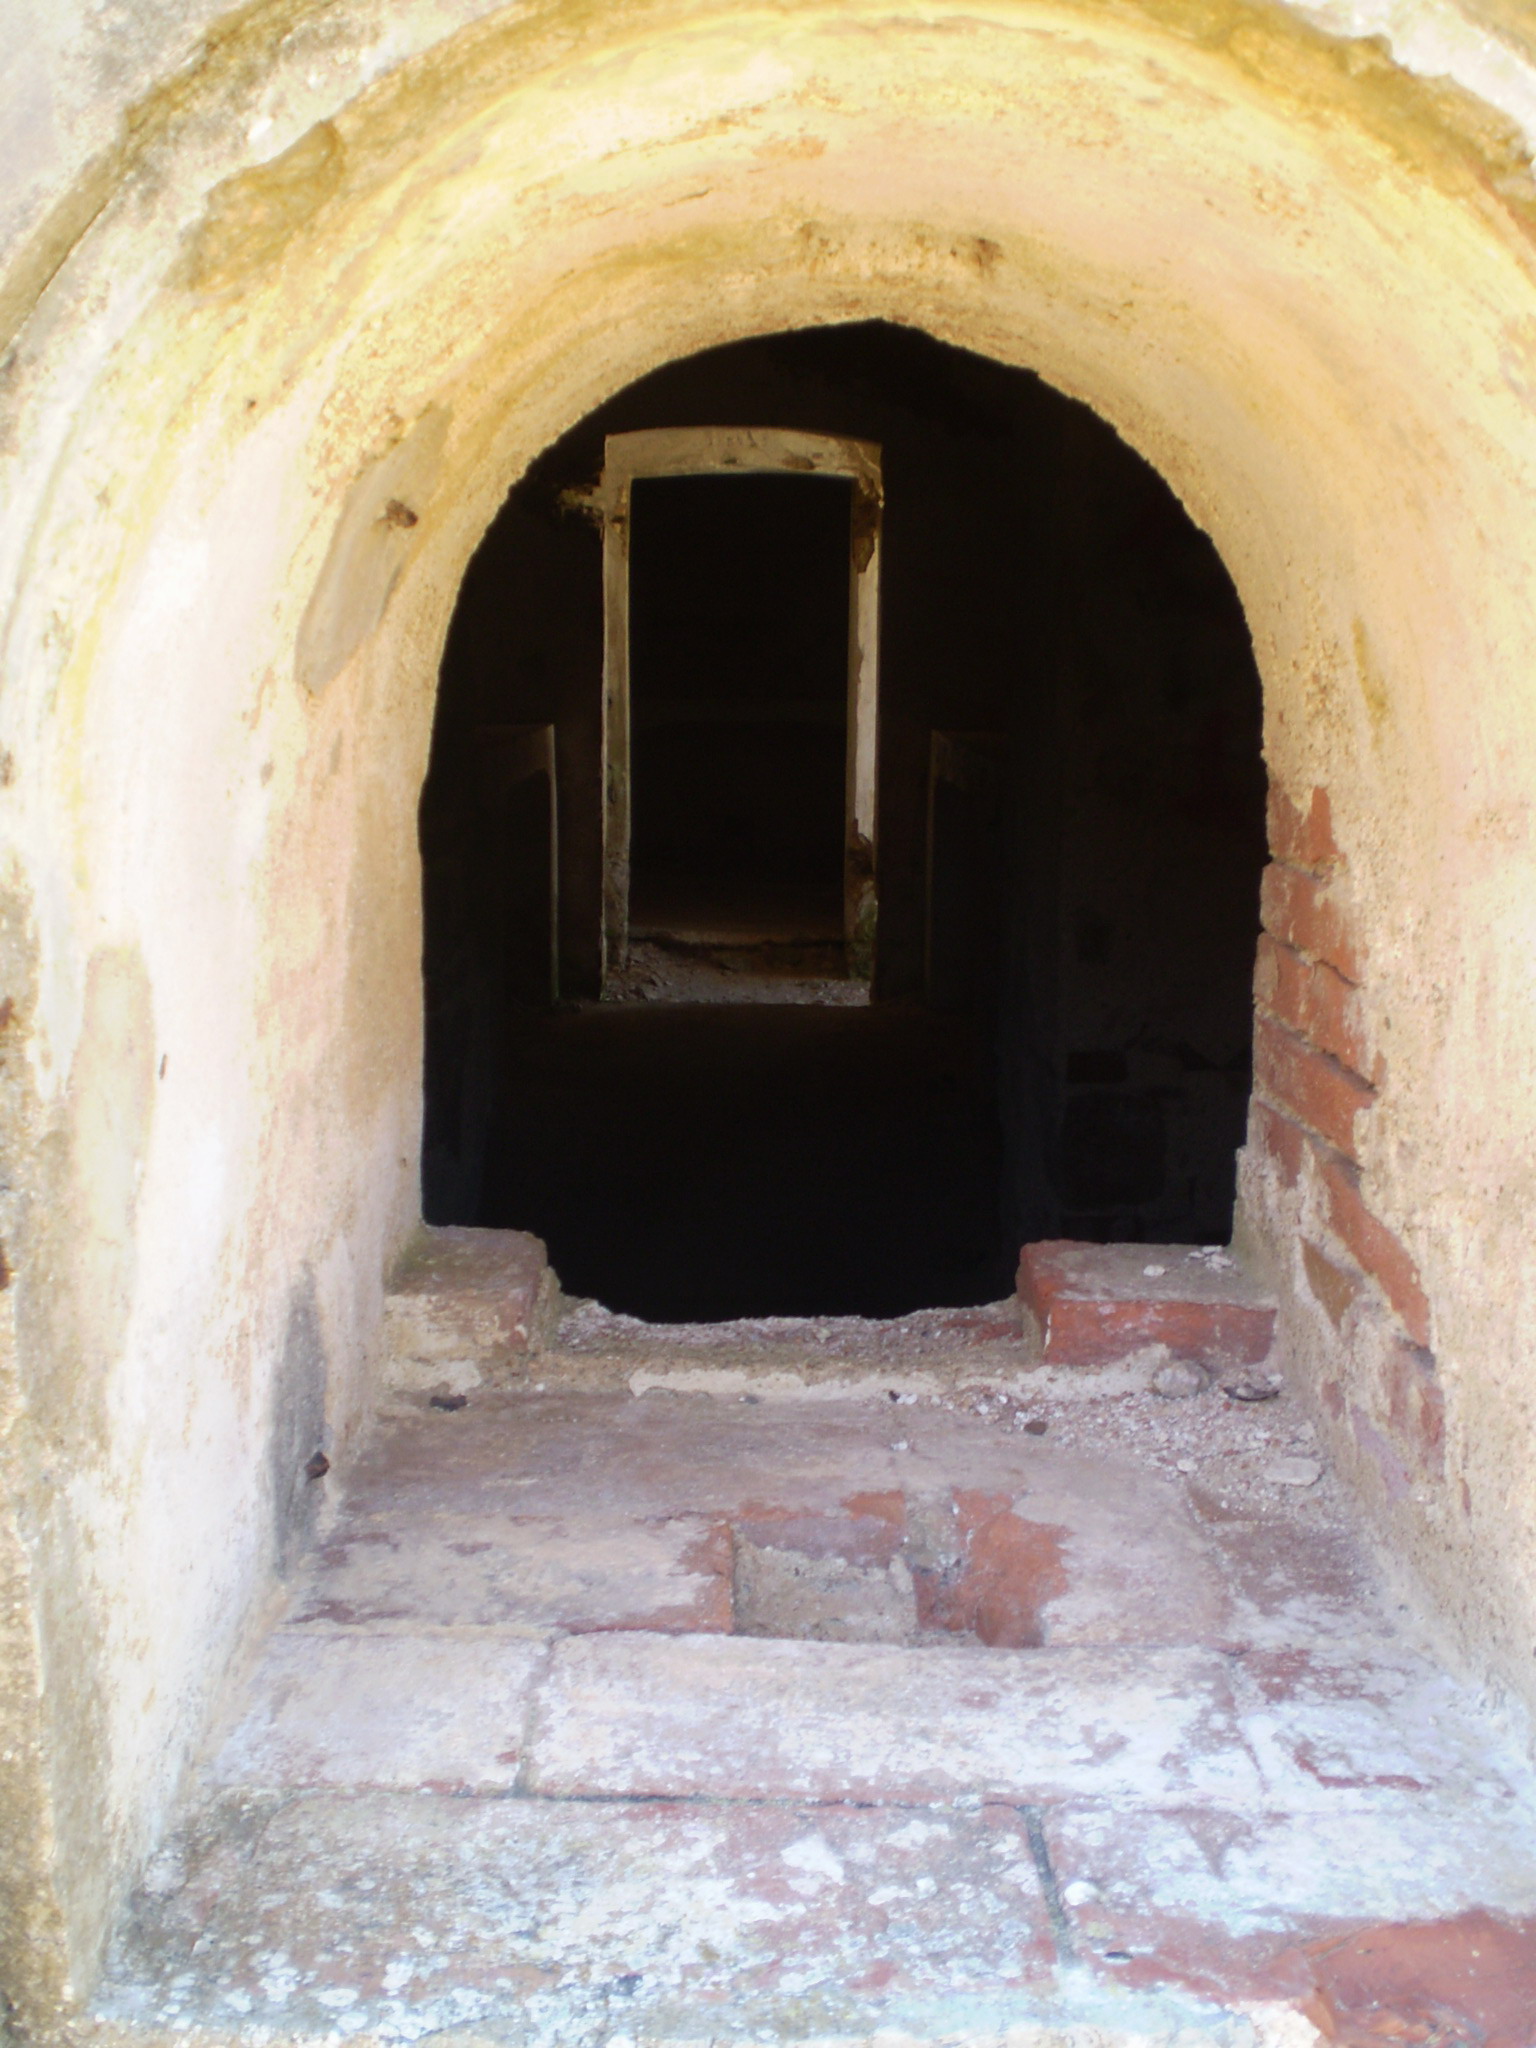 a tunnel entrance to a concrete cellar area